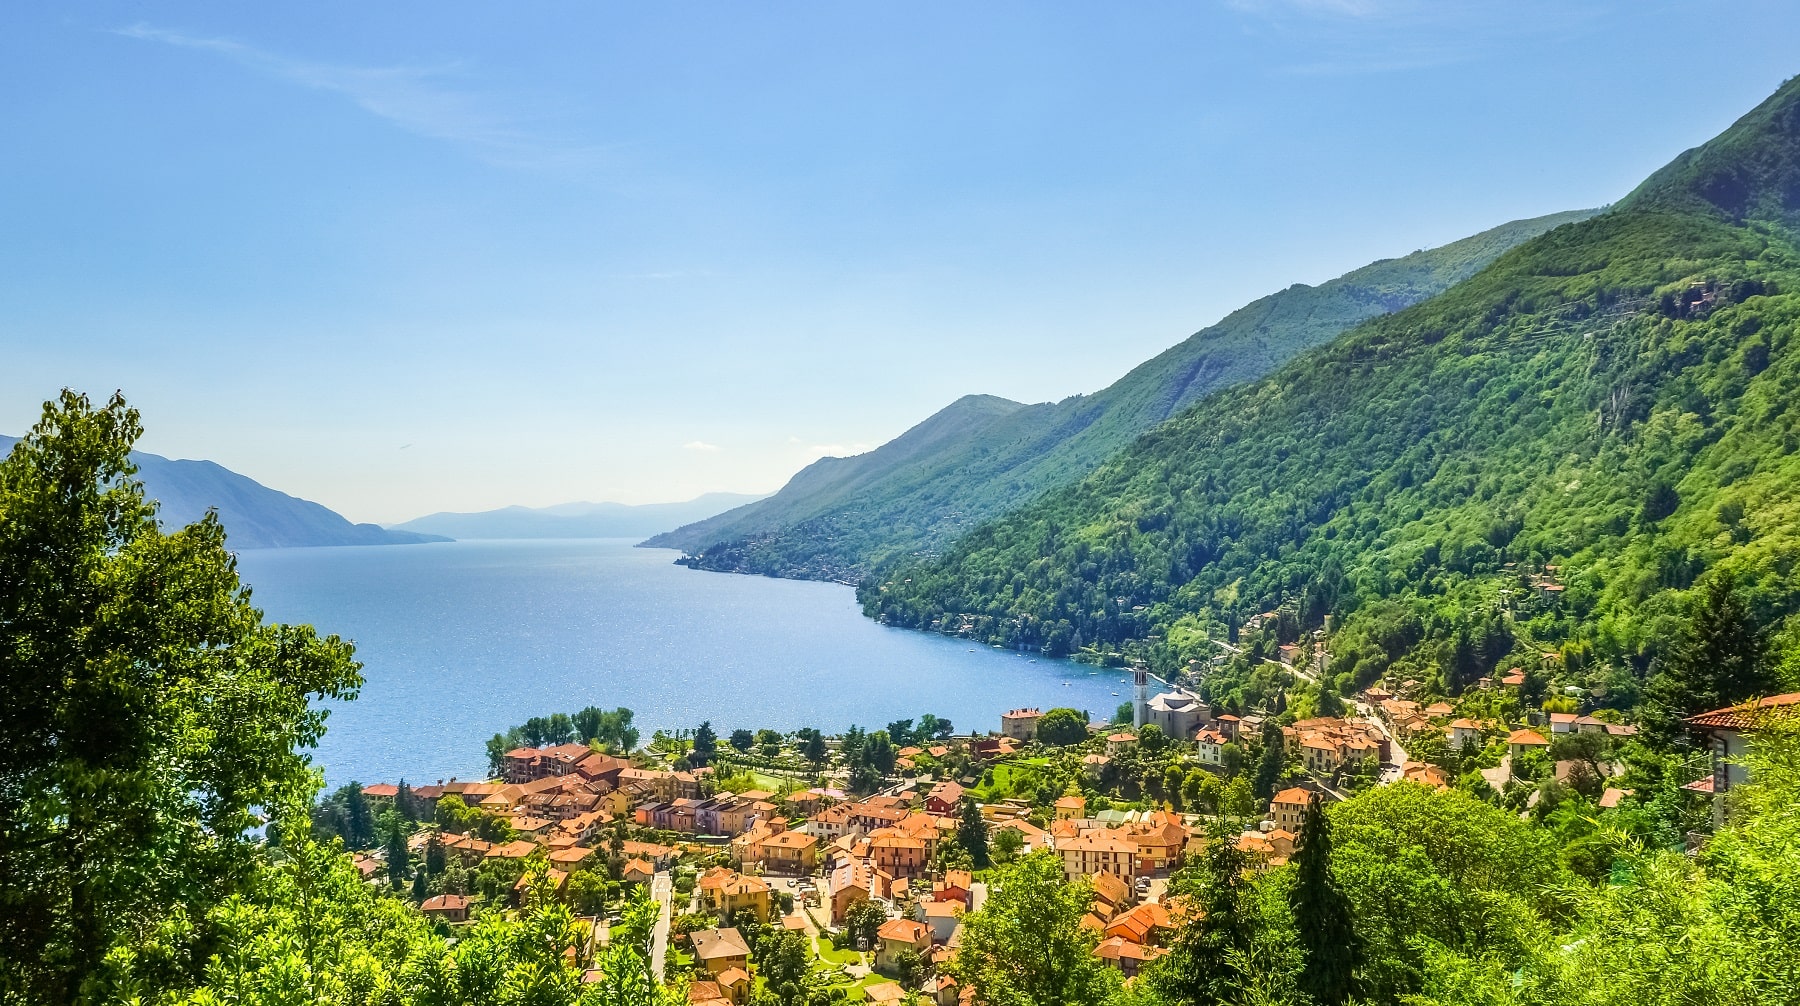 The Magic of the Italian Lakes